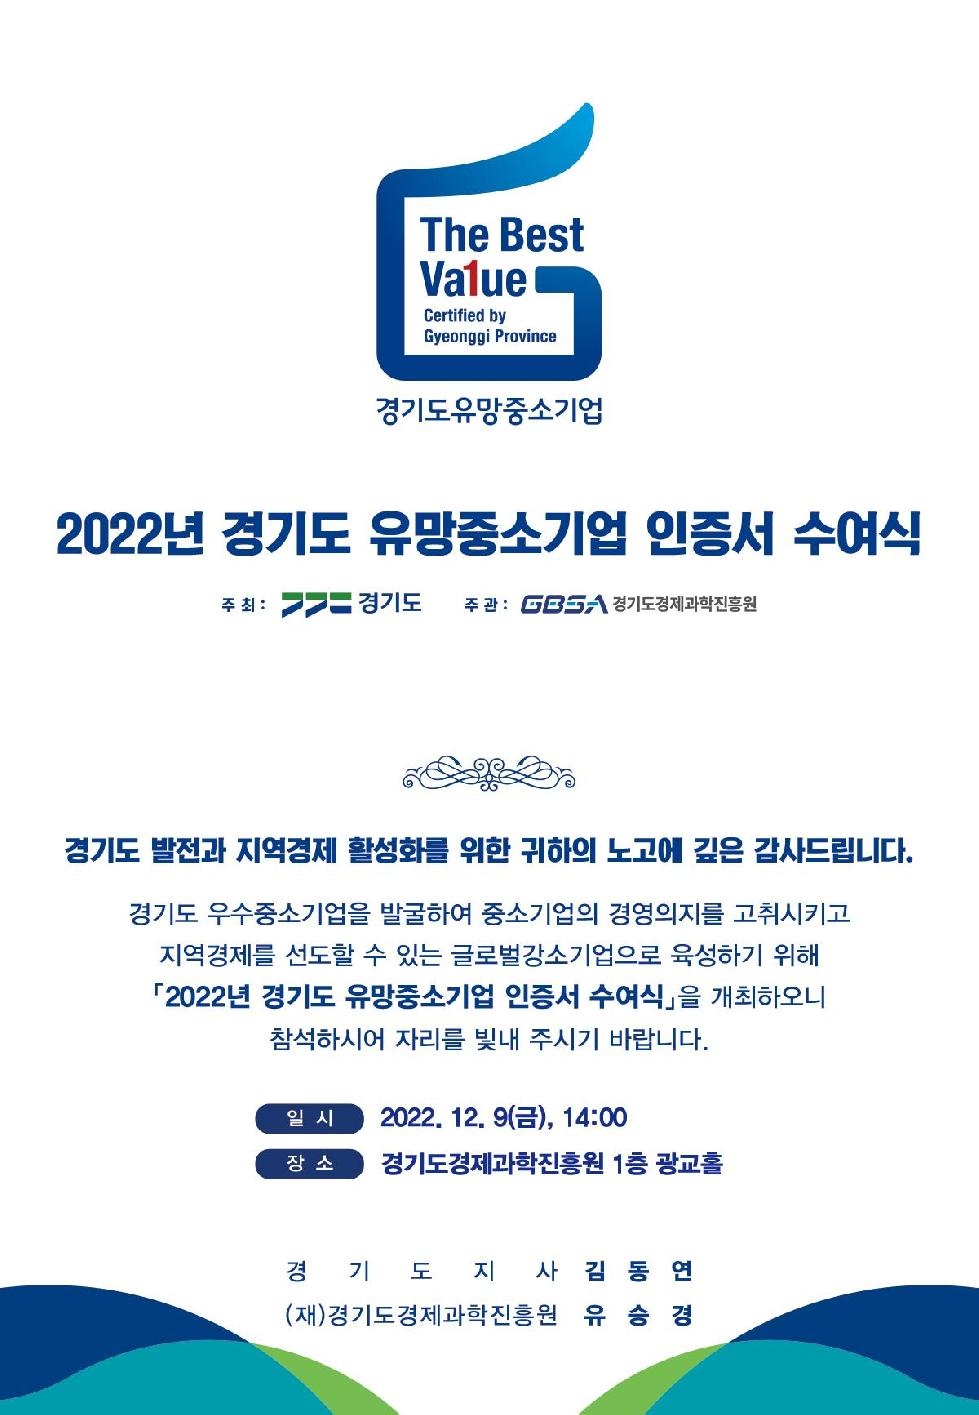 경기도, 2022년 유망중소기업 206개 사 선정. 9일 인증서 수여식